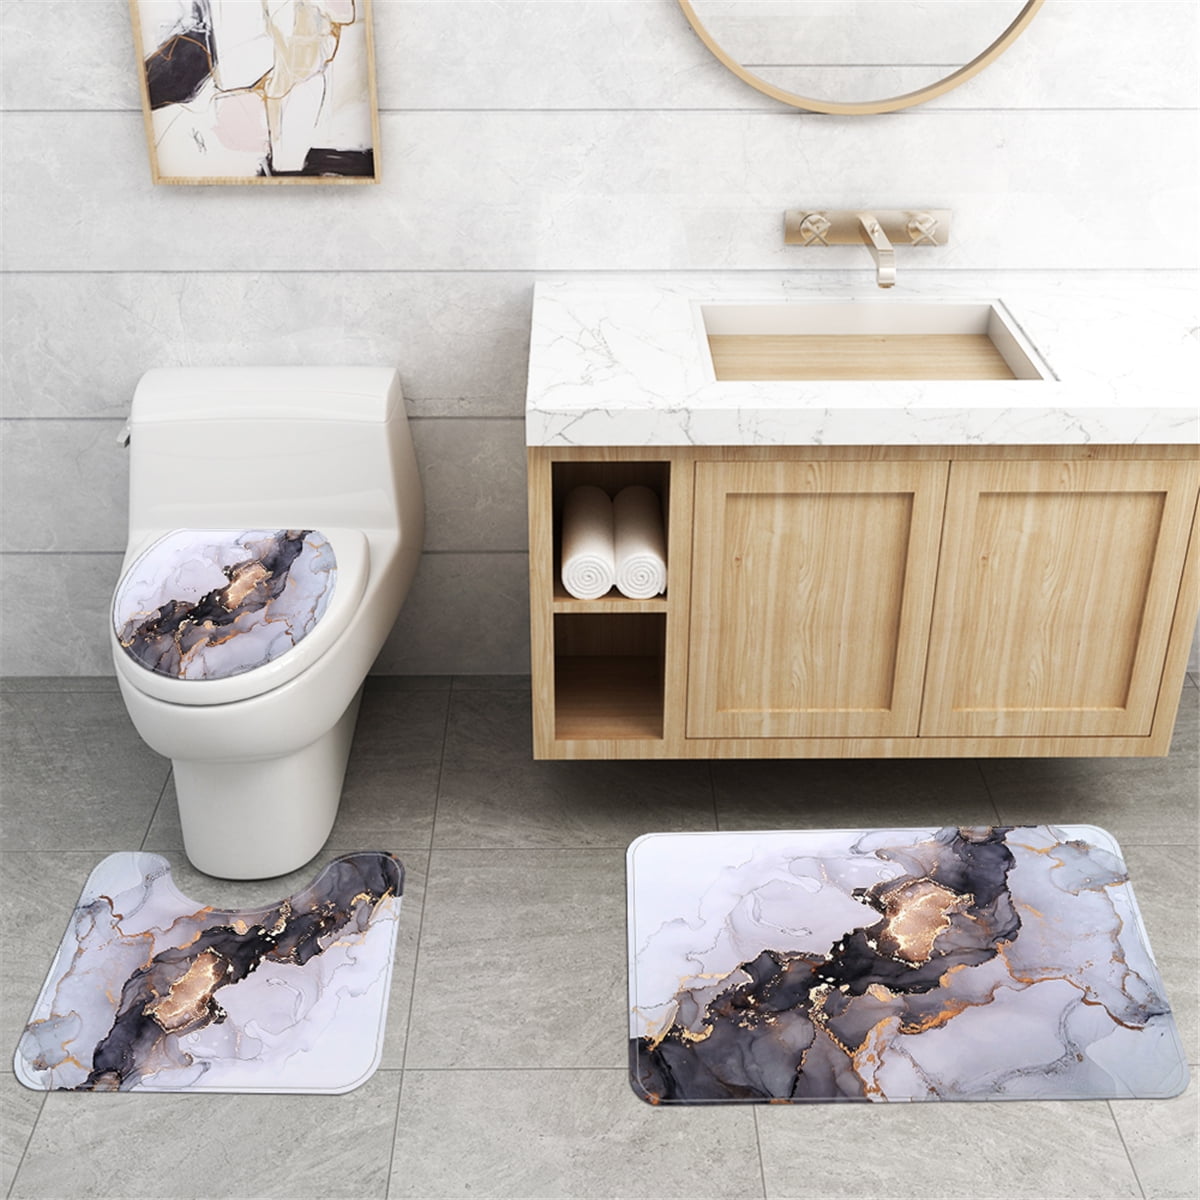 Las Vegas Raiders 4PCS Bathroom Rug Set Shower Curtain Toilet Lid